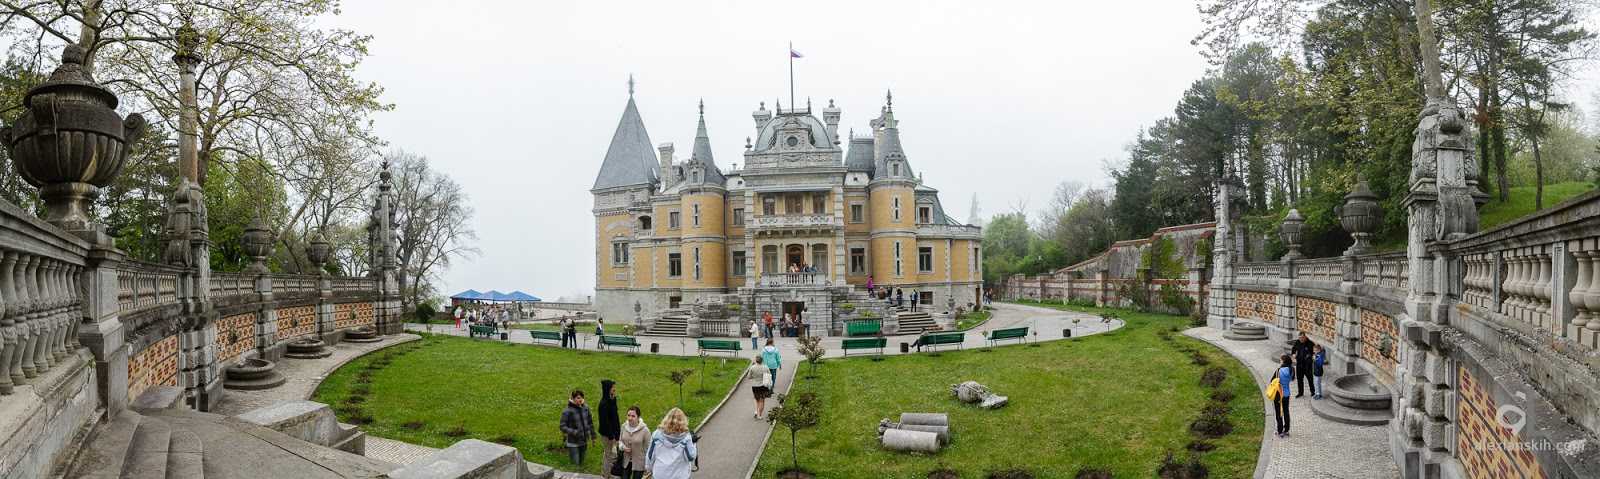 Массандровский дворец: где находится, время работы, экскурсии, отзывы - gkd.ru